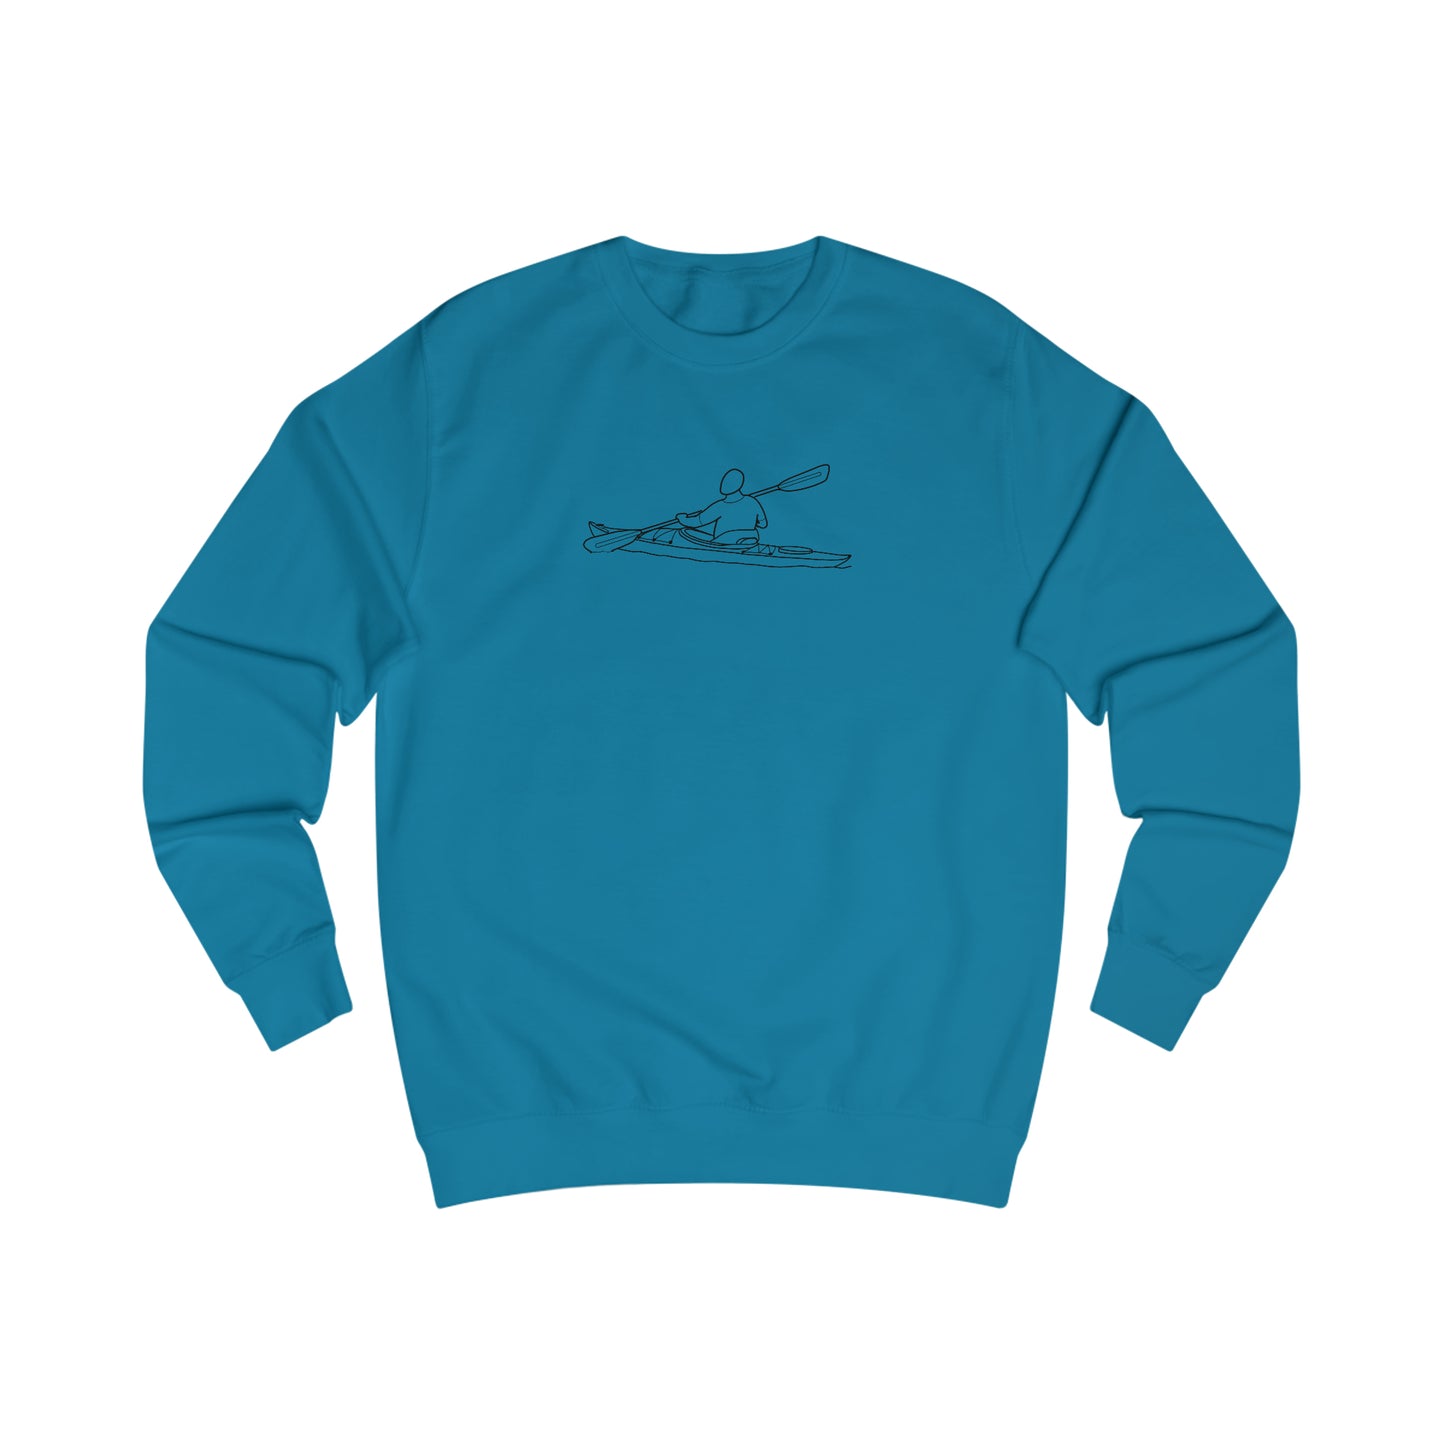 Kayak Man- Park Lake Men's Sweatshirt